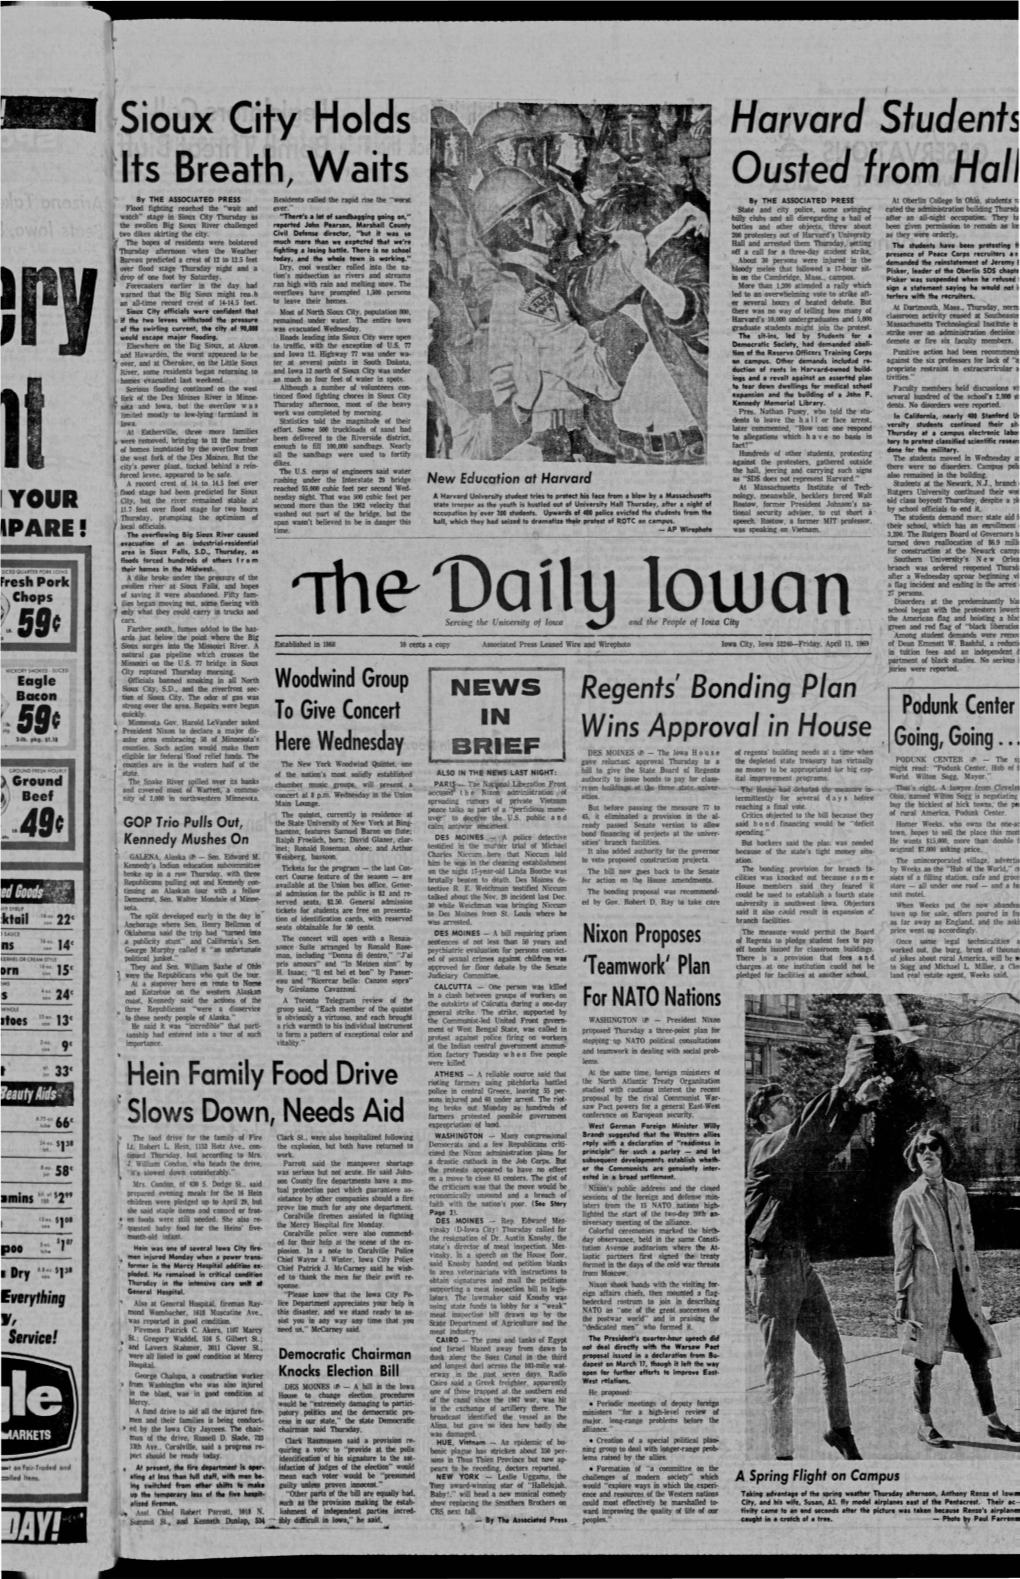 Daily Iowan (Iowa City, Iowa), 1969-04-11